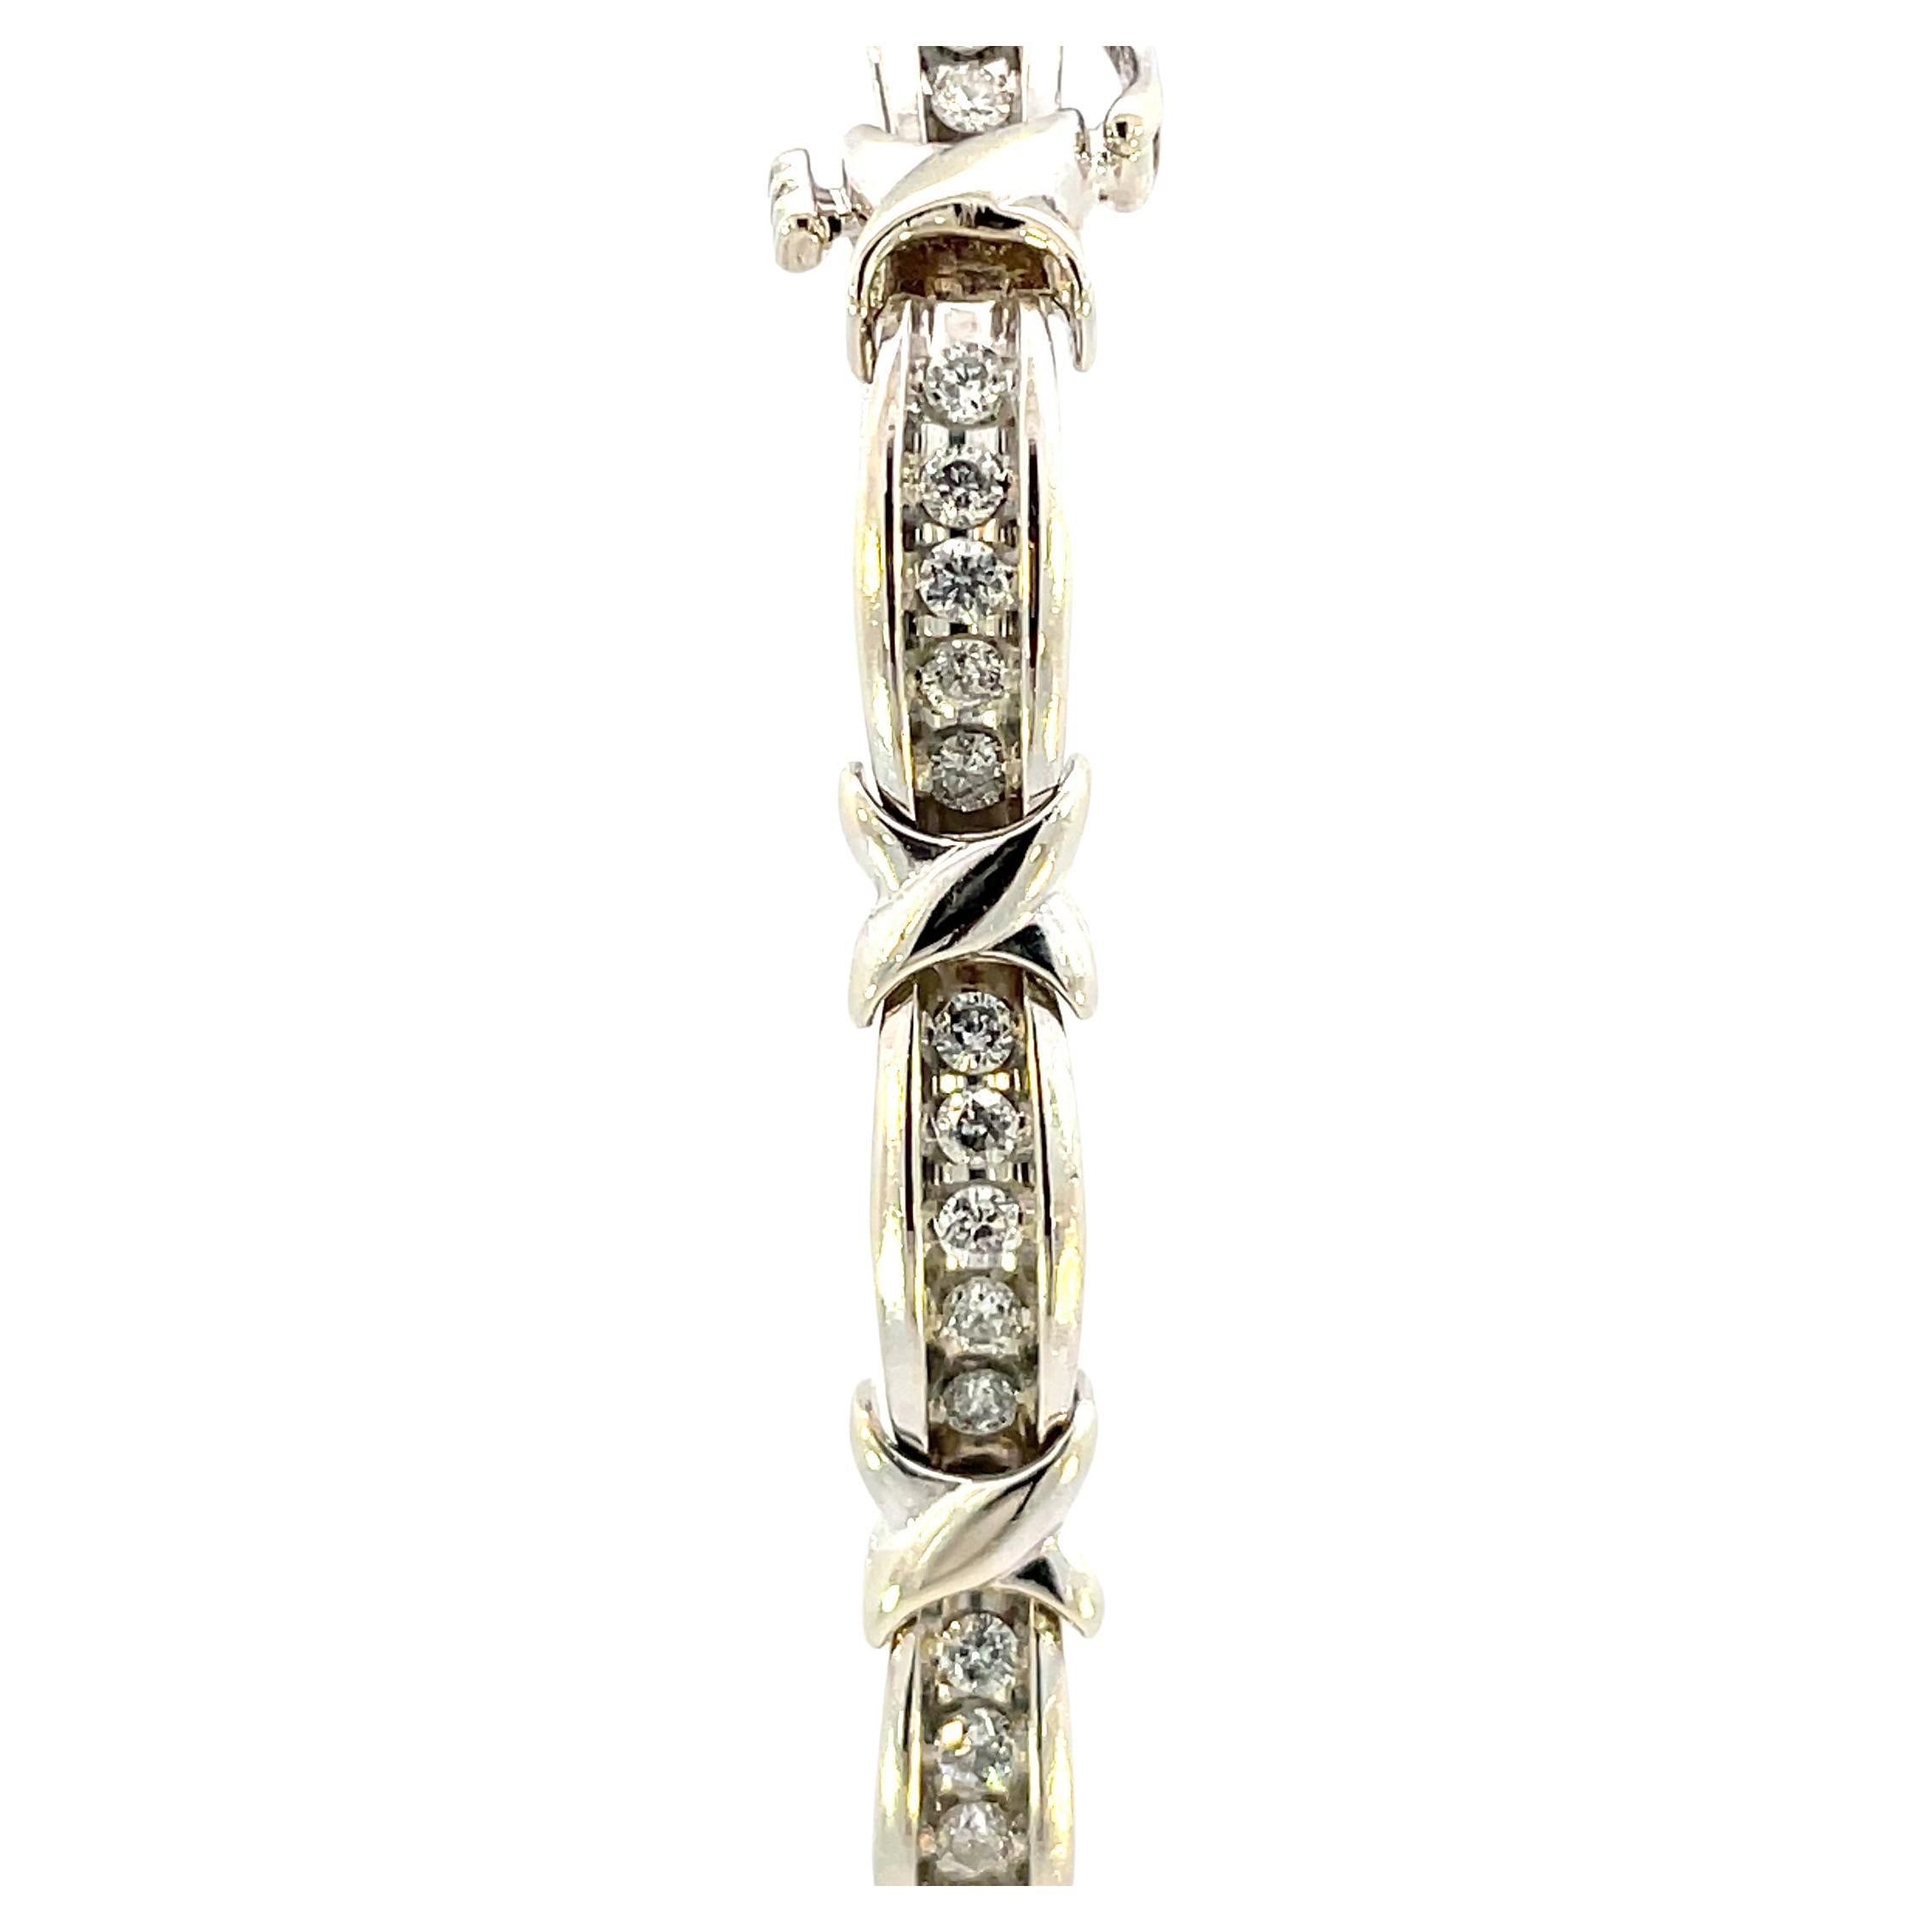 Ce bracelet contemporain en or blanc orné de diamants sur le thème des X et des O est absolument magnifique. Chaque section du bracelet contient 5 diamants ronds de taille brillante SI1/SI2 de pureté G/H de couleur, séparés par des maillons en forme